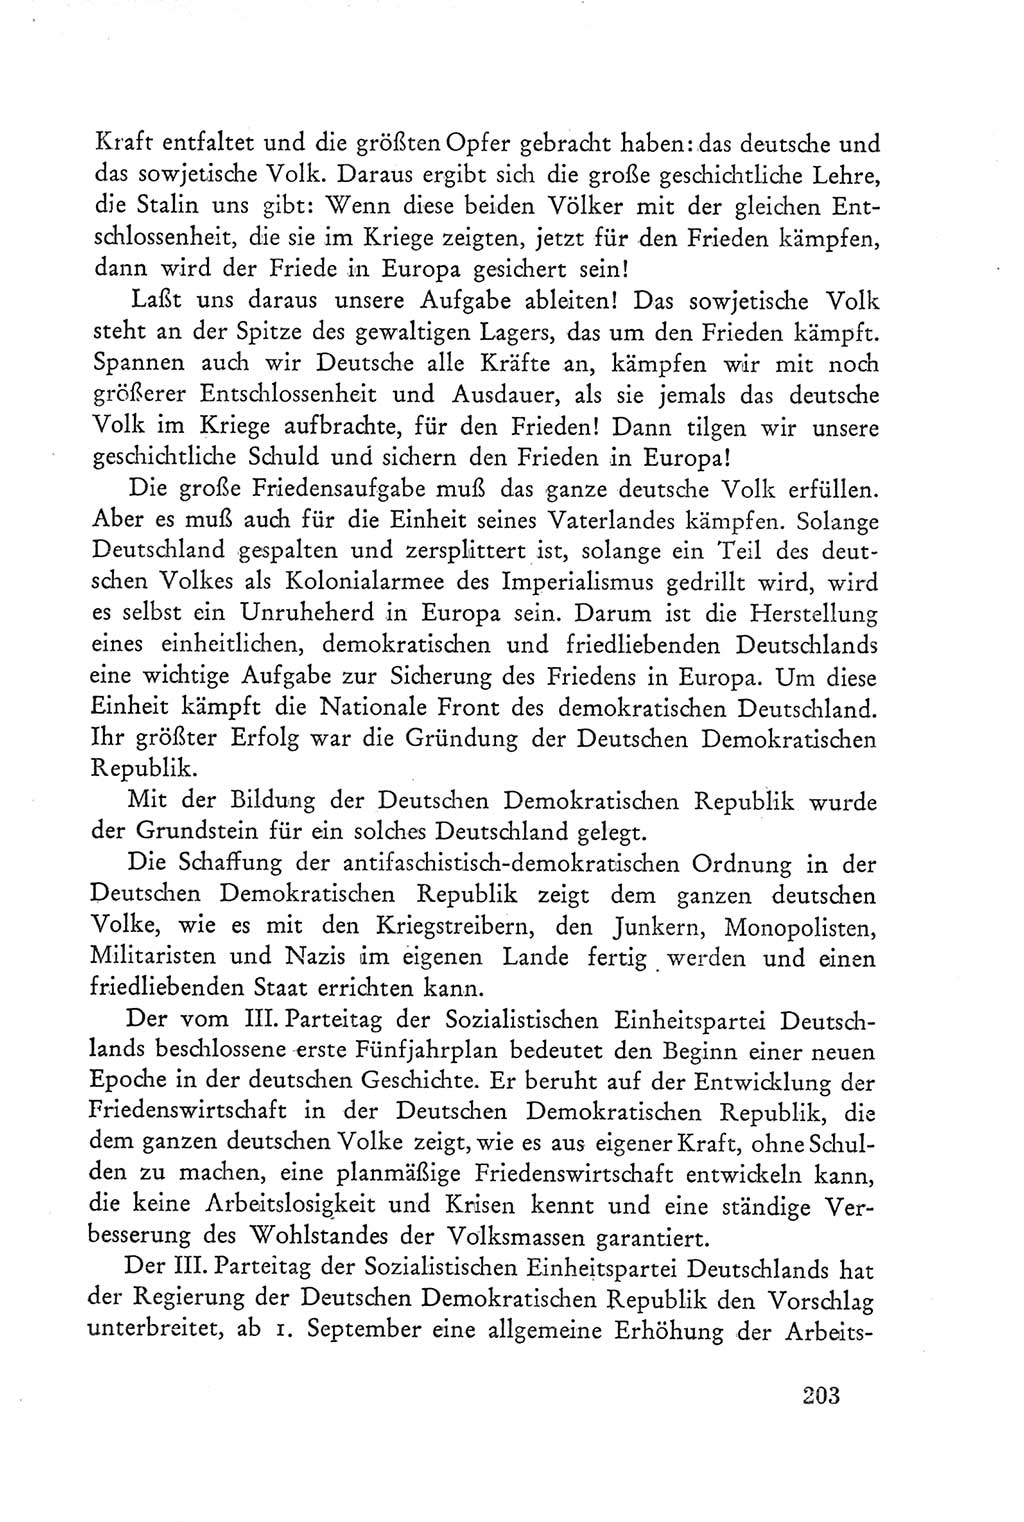 Protokoll der Verhandlungen des Ⅲ. Parteitages der Sozialistischen Einheitspartei Deutschlands (SED) [Deutsche Demokratische Republik (DDR)] 1950, Band 2, Seite 203 (Prot. Verh. Ⅲ. PT SED DDR 1950, Bd. 2, S. 203)